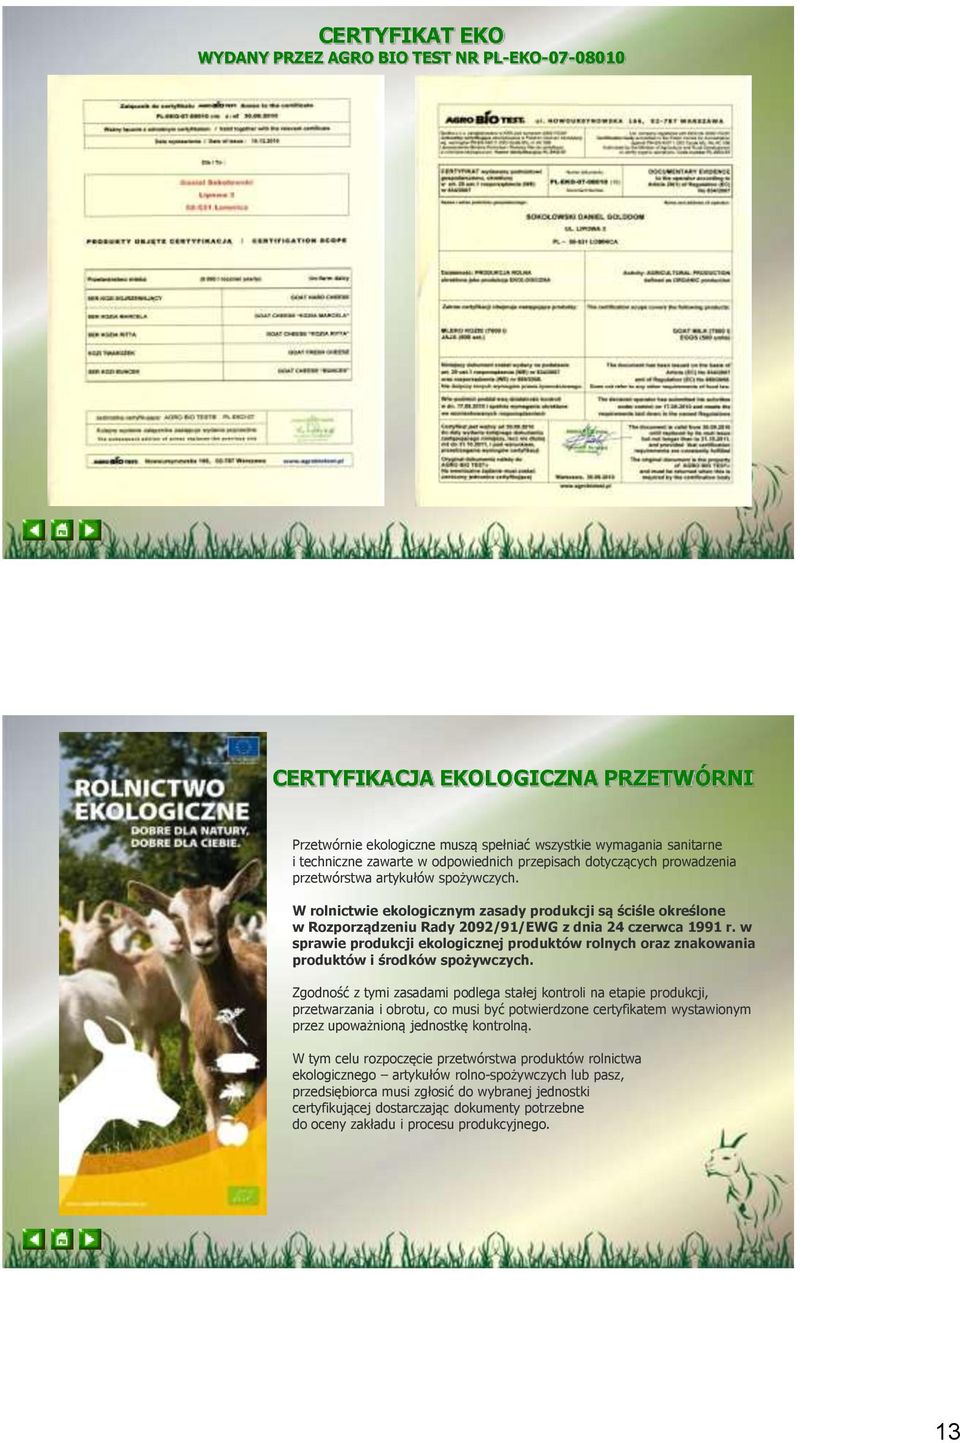 W rolnictwie ekologicznym zasady produkcji są ściśle określone w Rozporządzeniu Rady 2092/91/EWG z dnia 24 czerwca 1991 r.